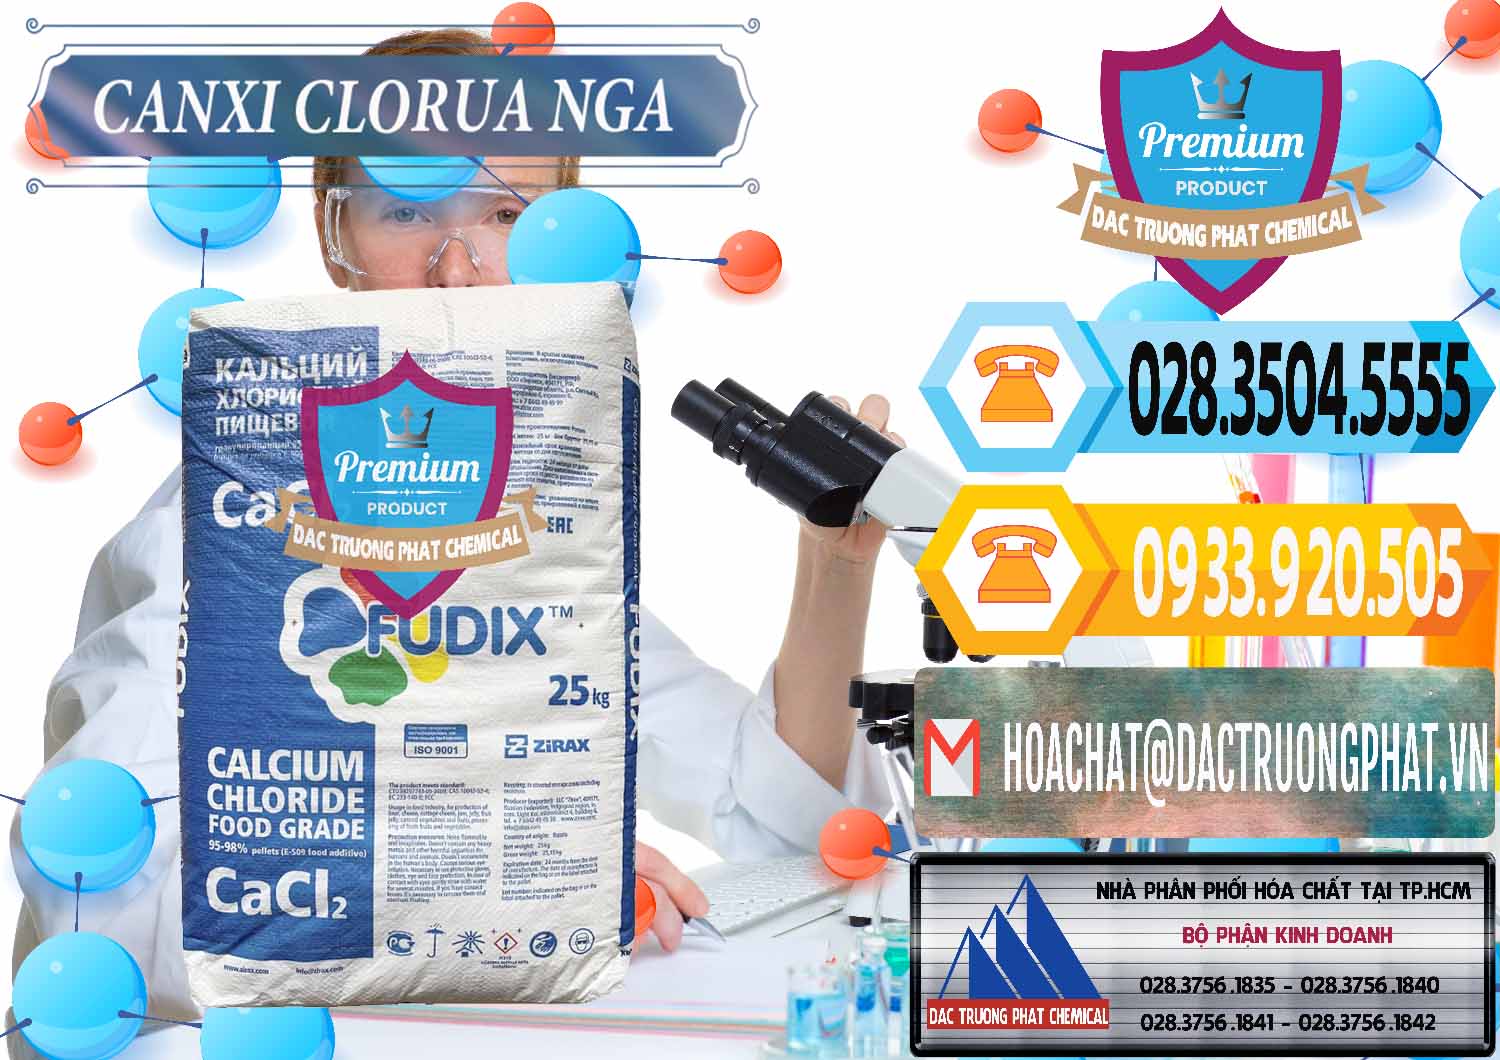 Đơn vị cung cấp _ bán CaCl2 – Canxi Clorua Nga Russia - 0430 - Đơn vị chuyên bán ( cung cấp ) hóa chất tại TP.HCM - hoachattayrua.net